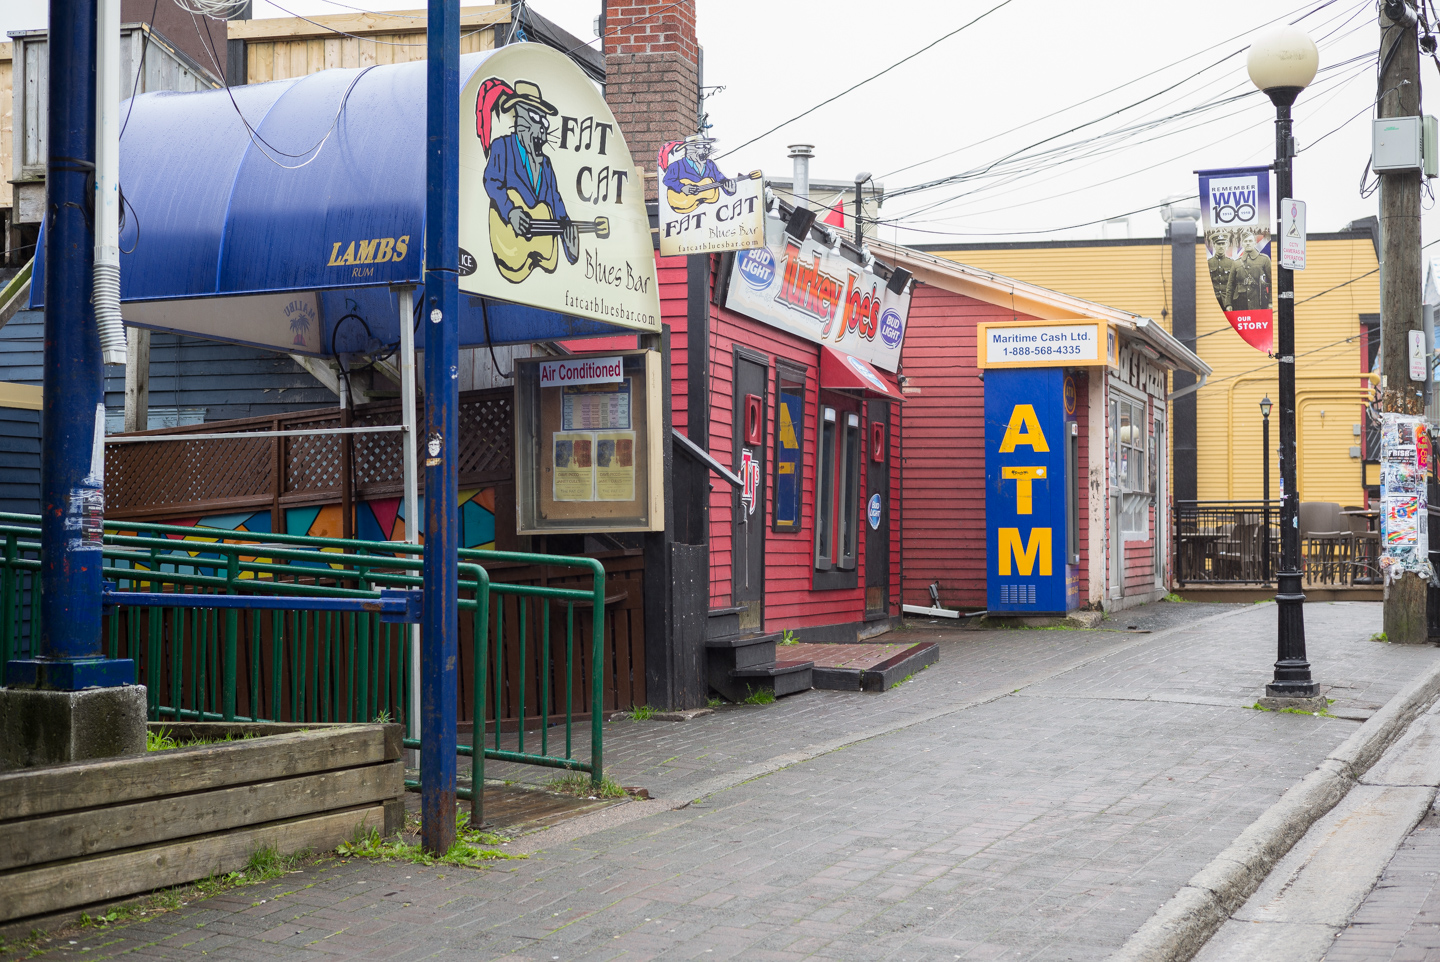 Fat Cat, Turkey Joe’s, ATM. George Street. St. John’s, Newfoundland 2016